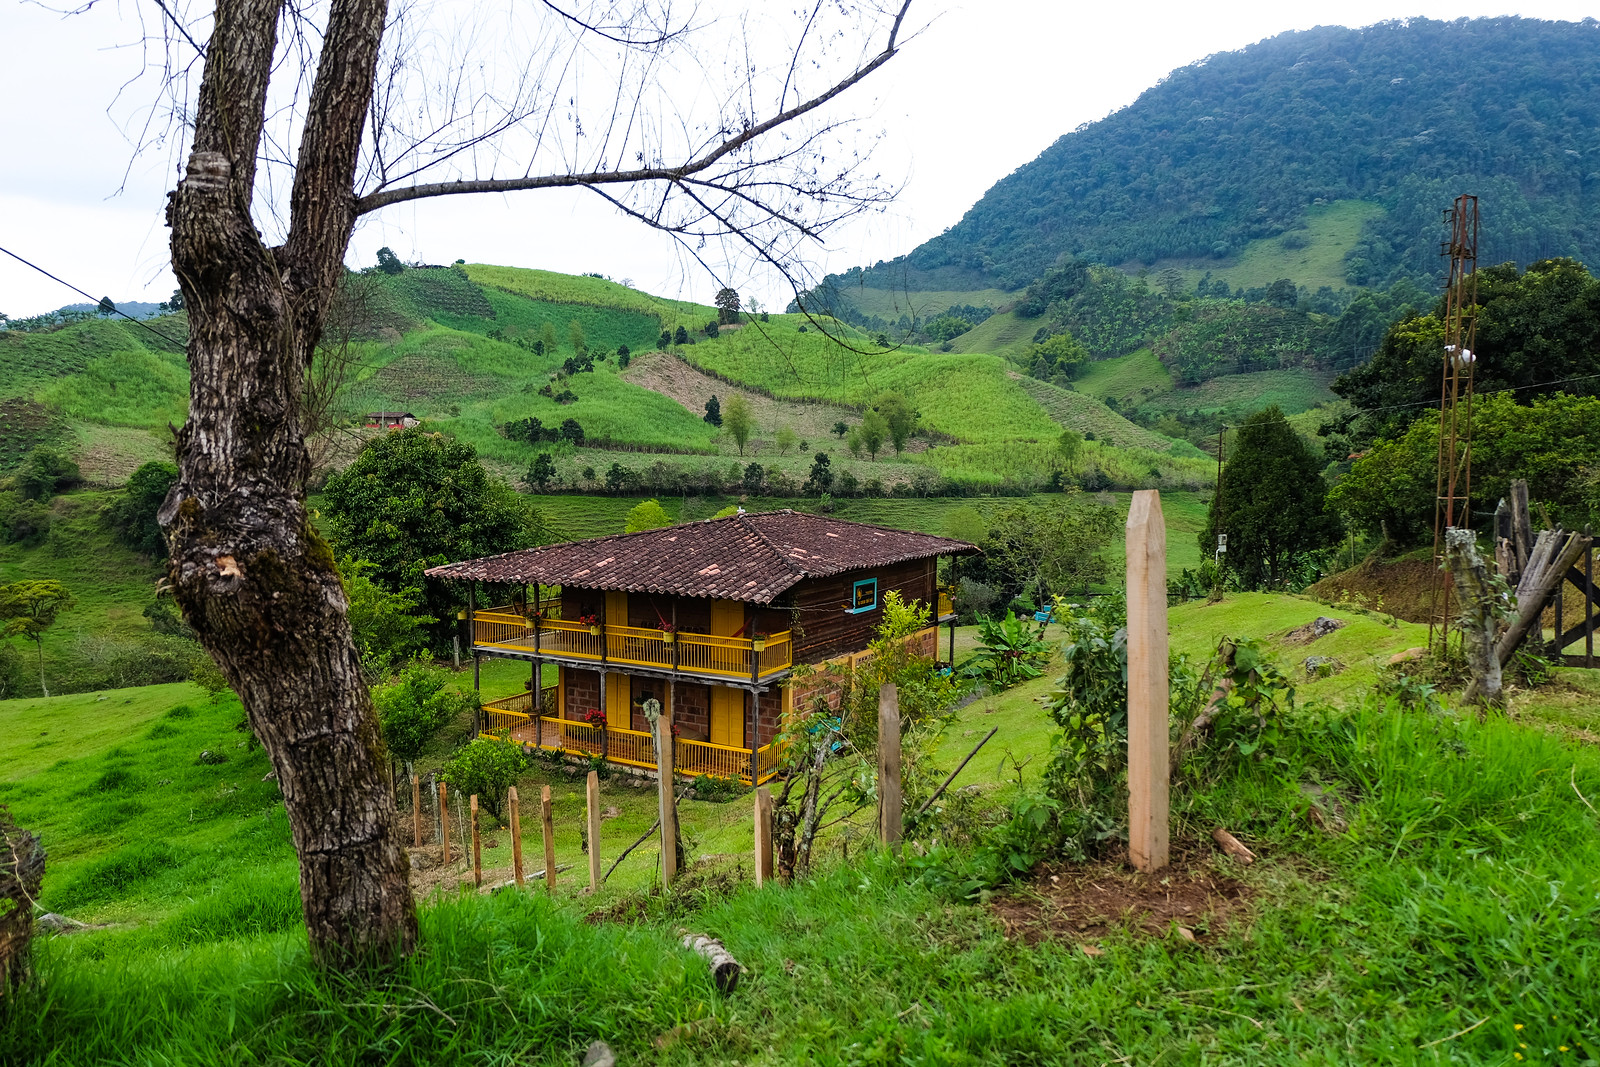 Jardin, Colombia